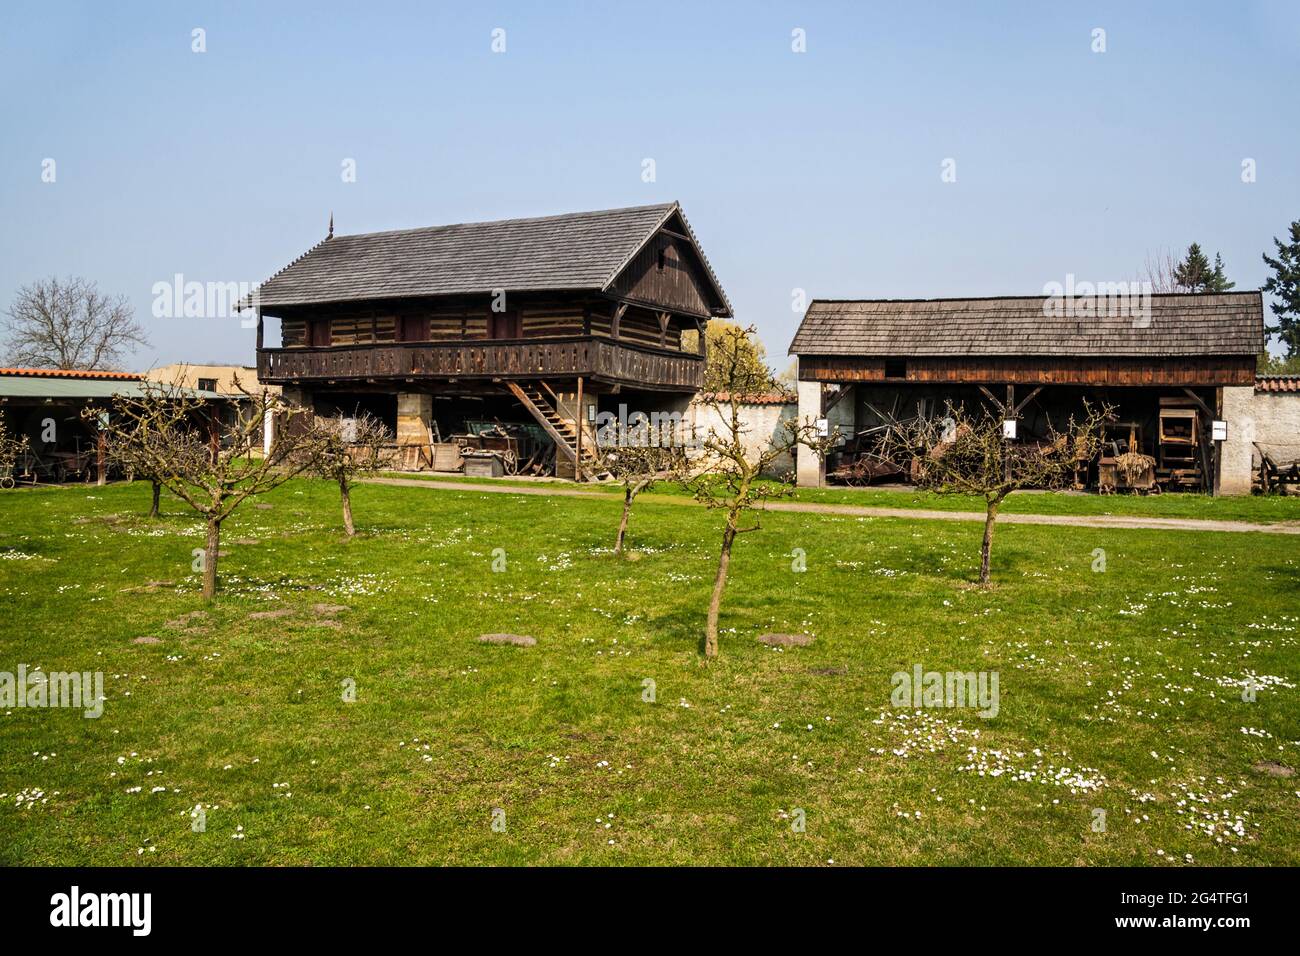 Maison de village traditionnelle du XIXe siècle au musée en plein air de Prerov, République tchèque Banque D'Images